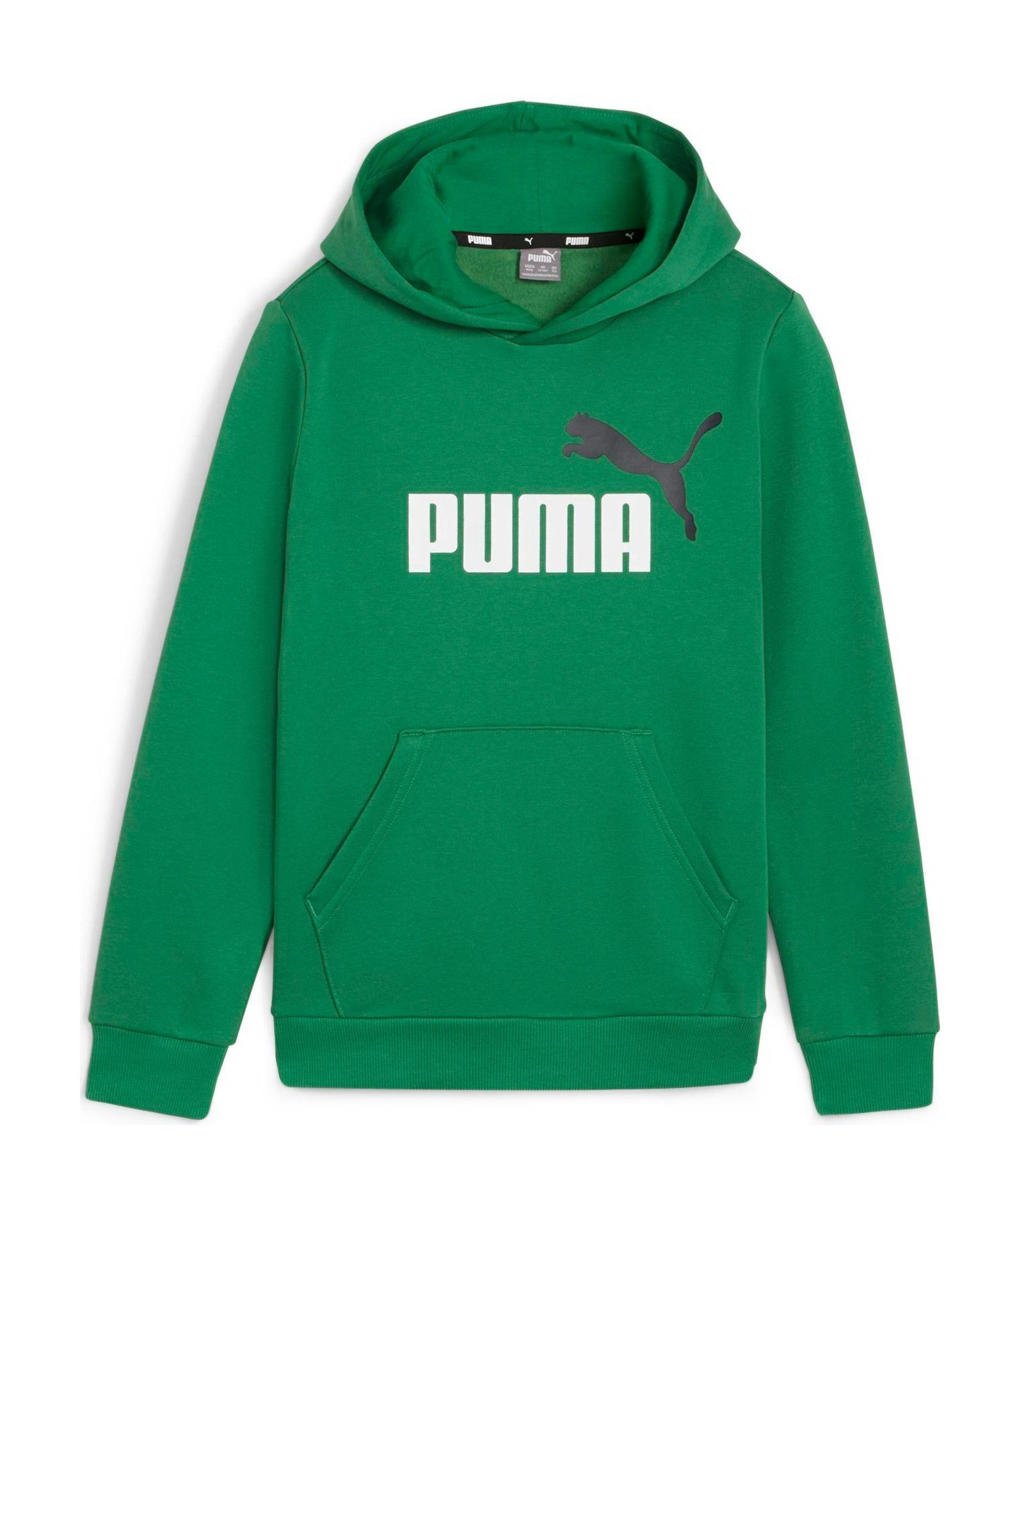 Groene jongens Puma hoodie van sweat materiaal met logo dessin, lange mouwen en capuchon